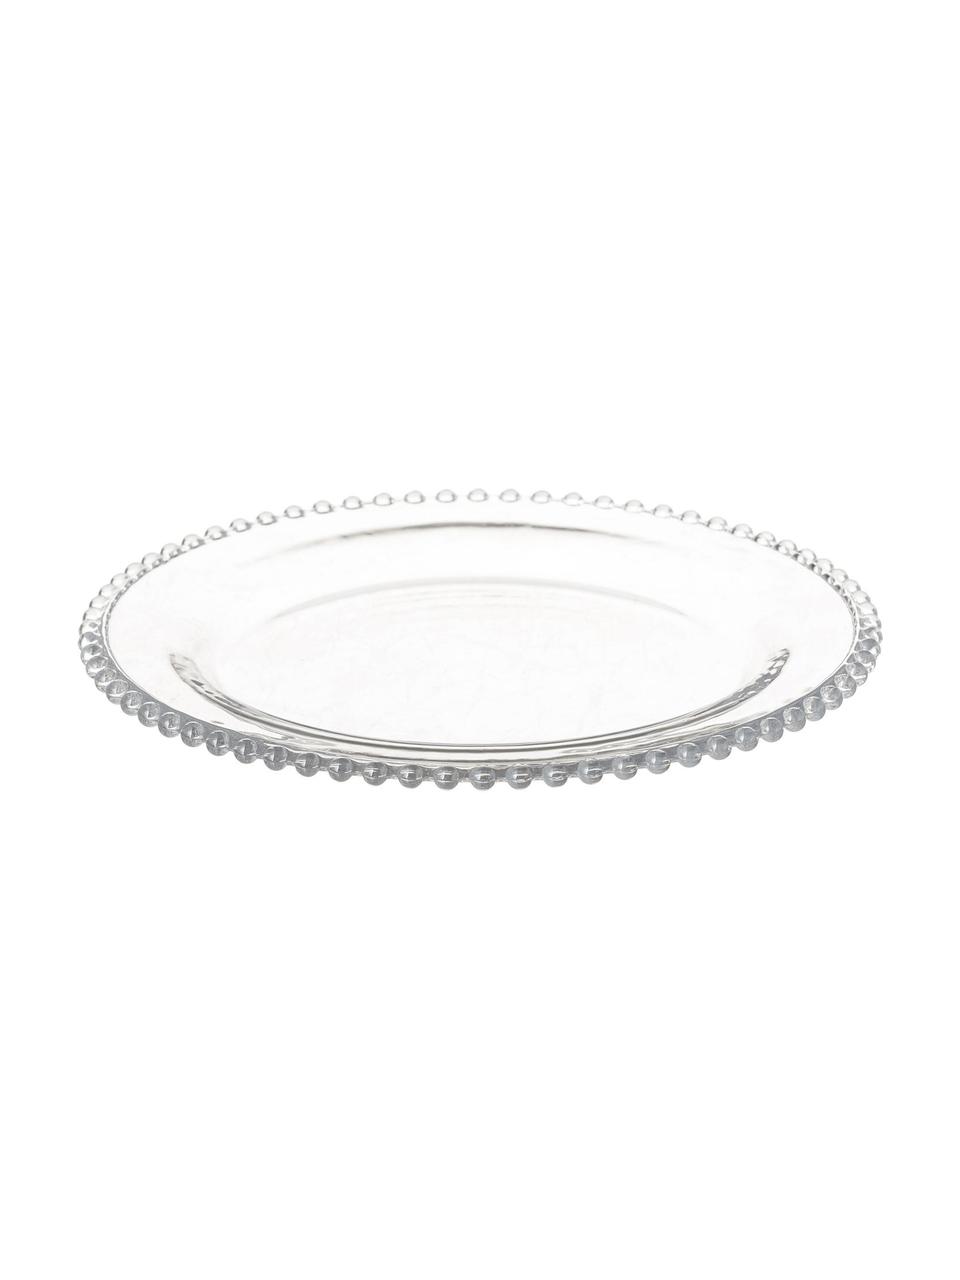 Assiettes plates Perles, 3 pièces, Verre, Transparent, Ø 27 cm